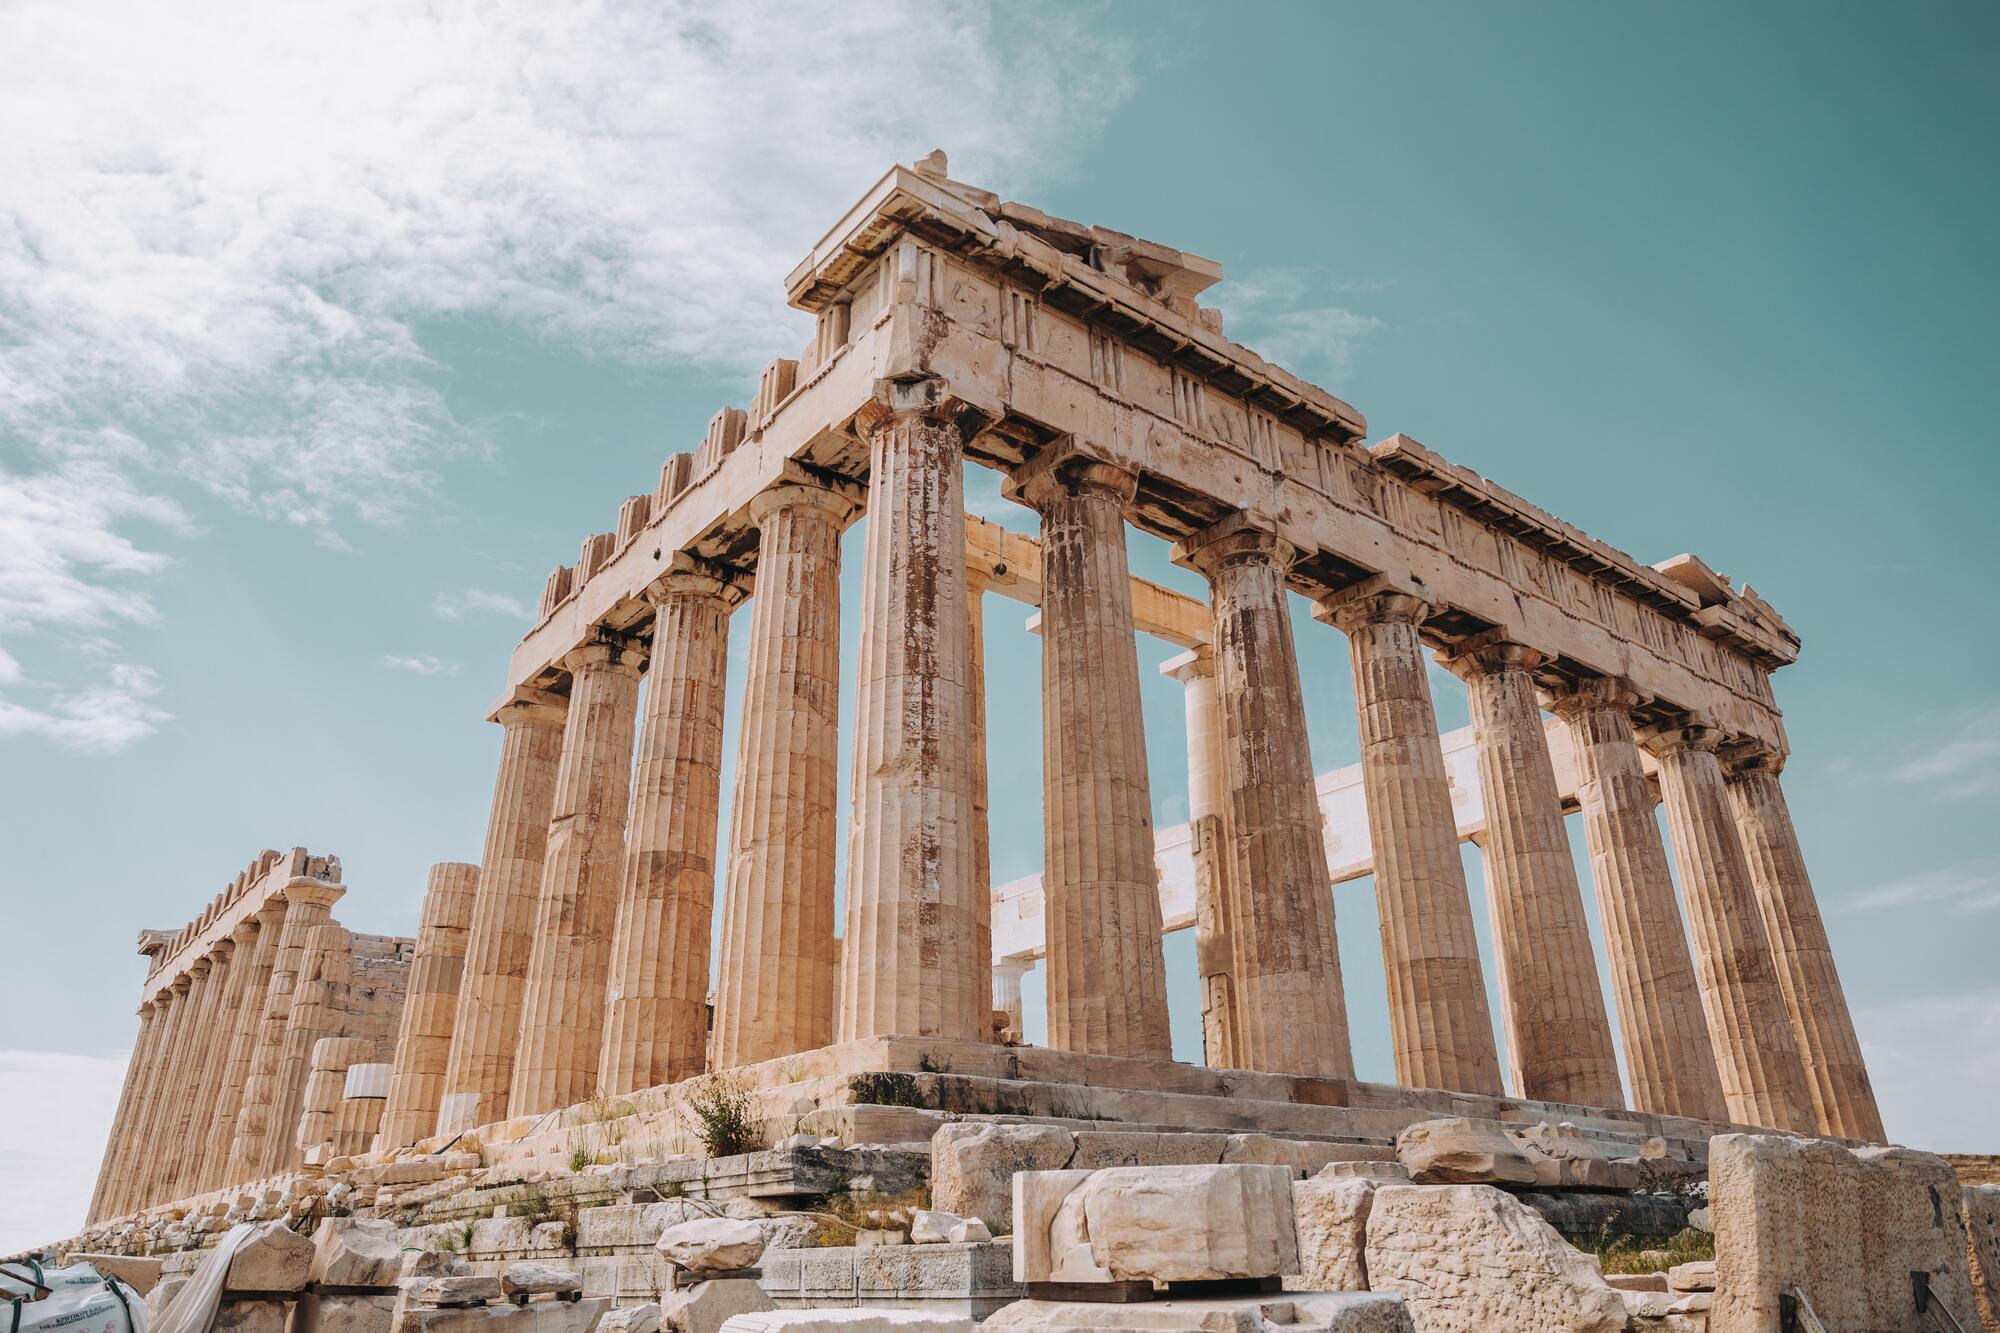 Древние постройки, возраст которых может превышать 2000 лет, находятся под особой охраной в Греции.